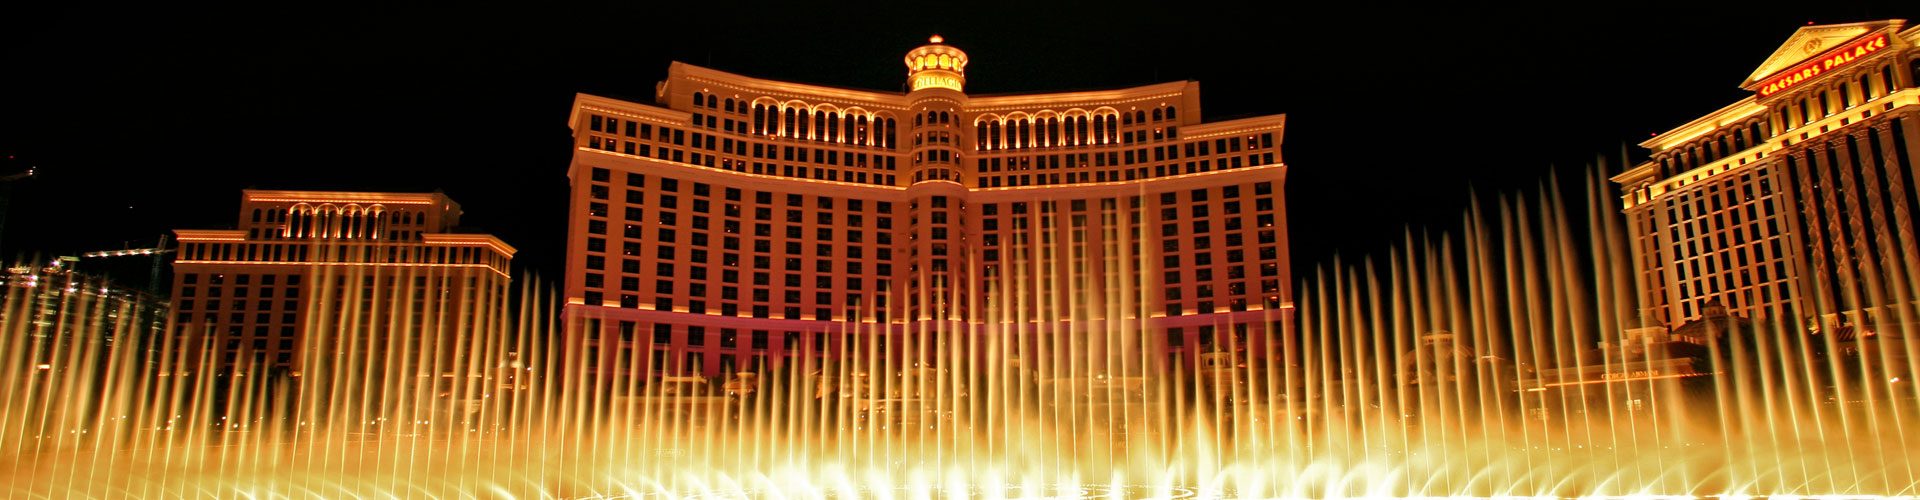 Wasserfontänen im Hotel Bellagio, Las Vegas